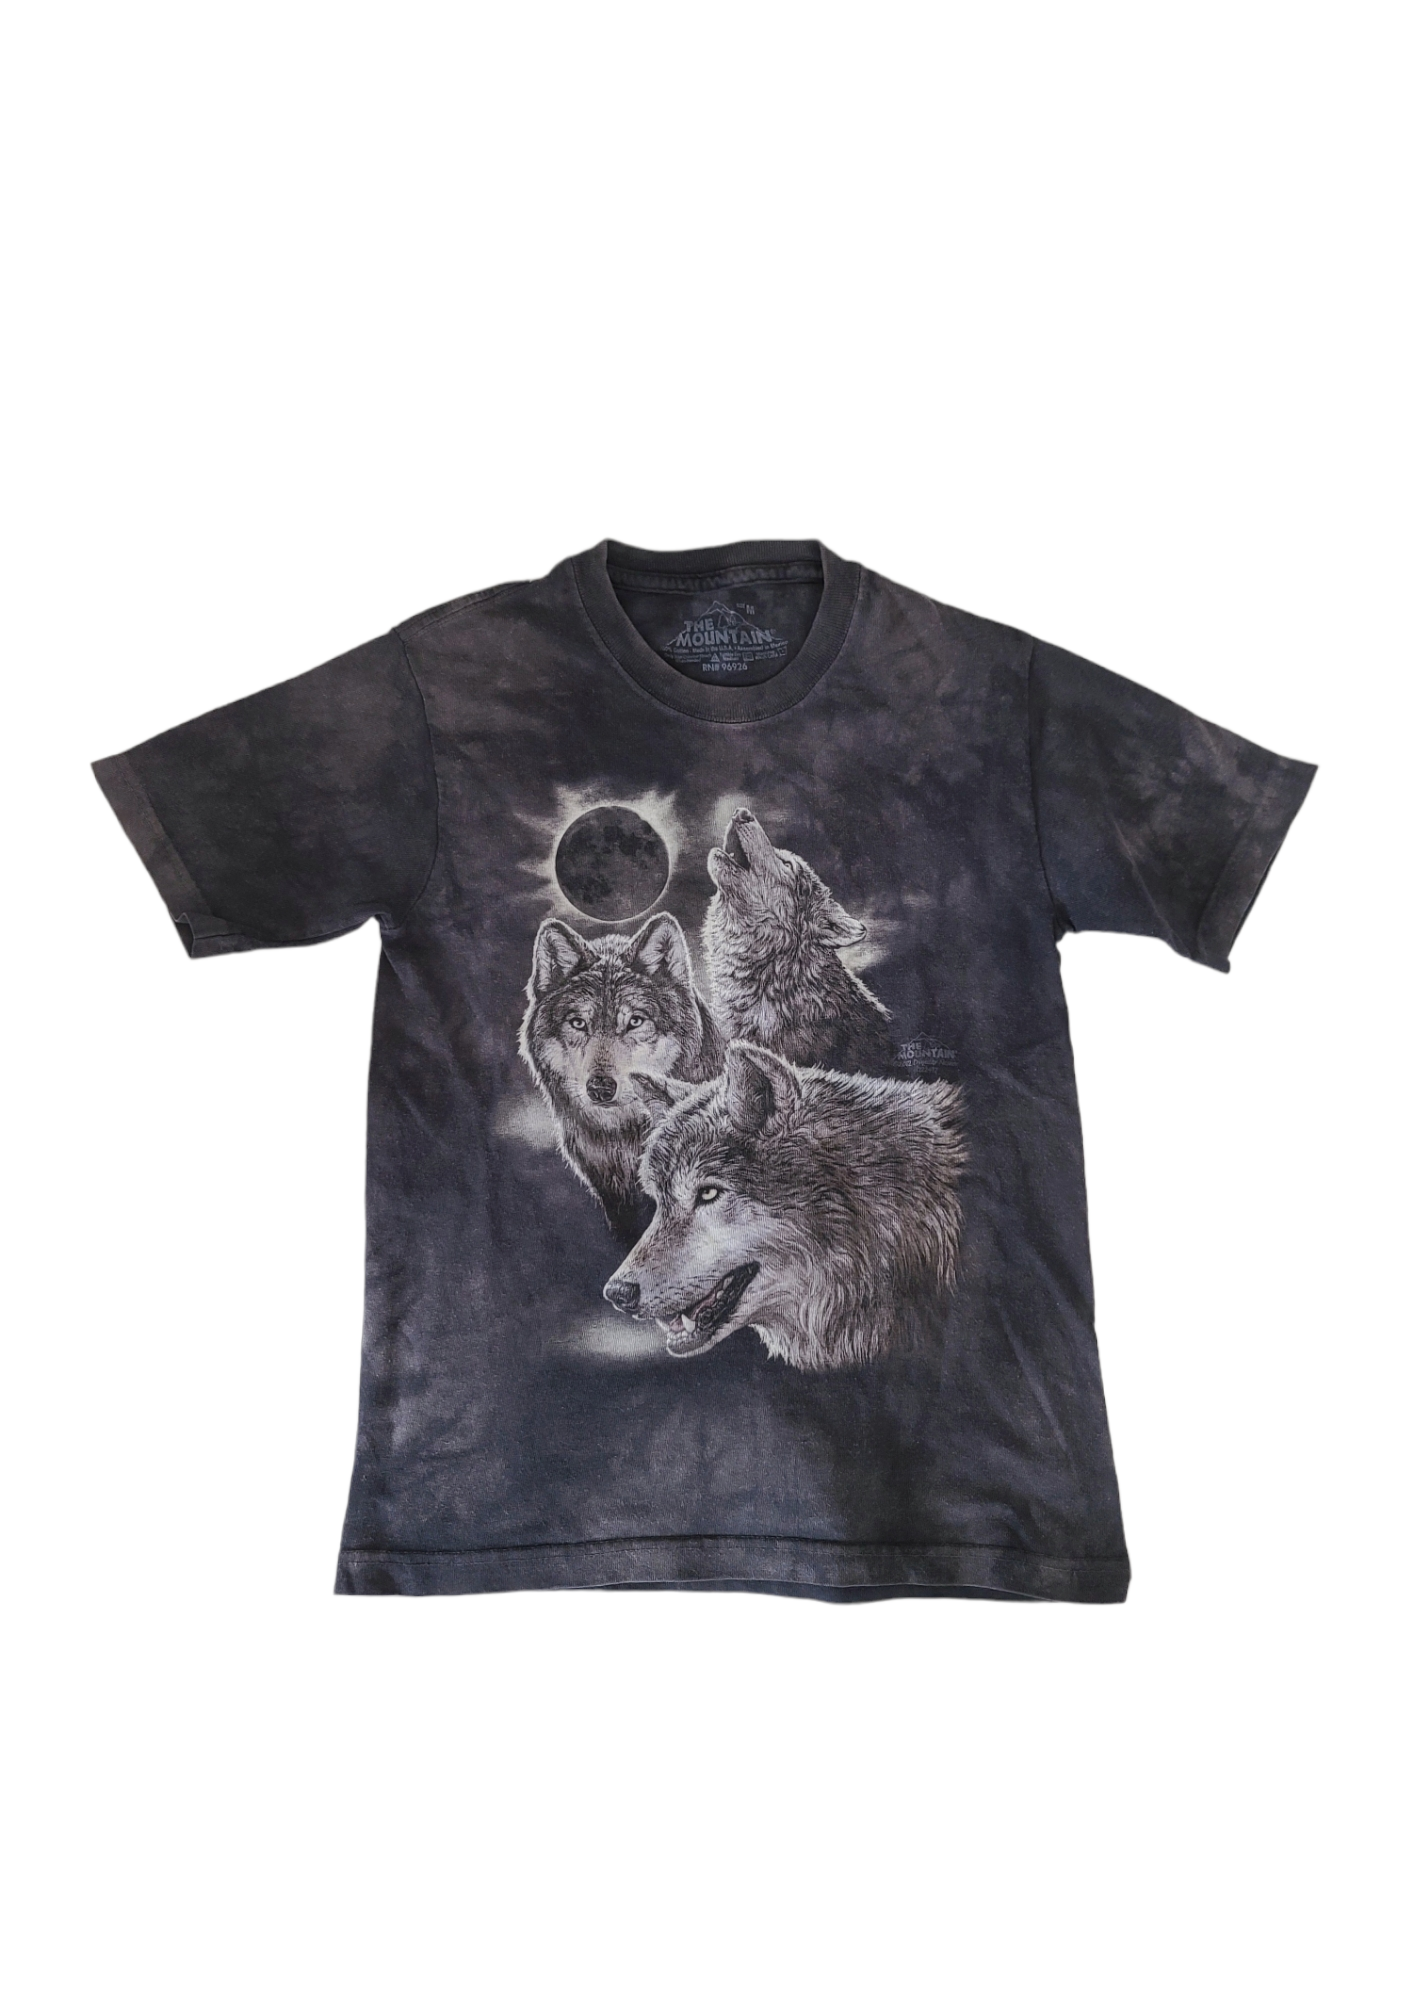 Tshirt rock vintage y2k emo printed animal kitch metal loups nature streetwear